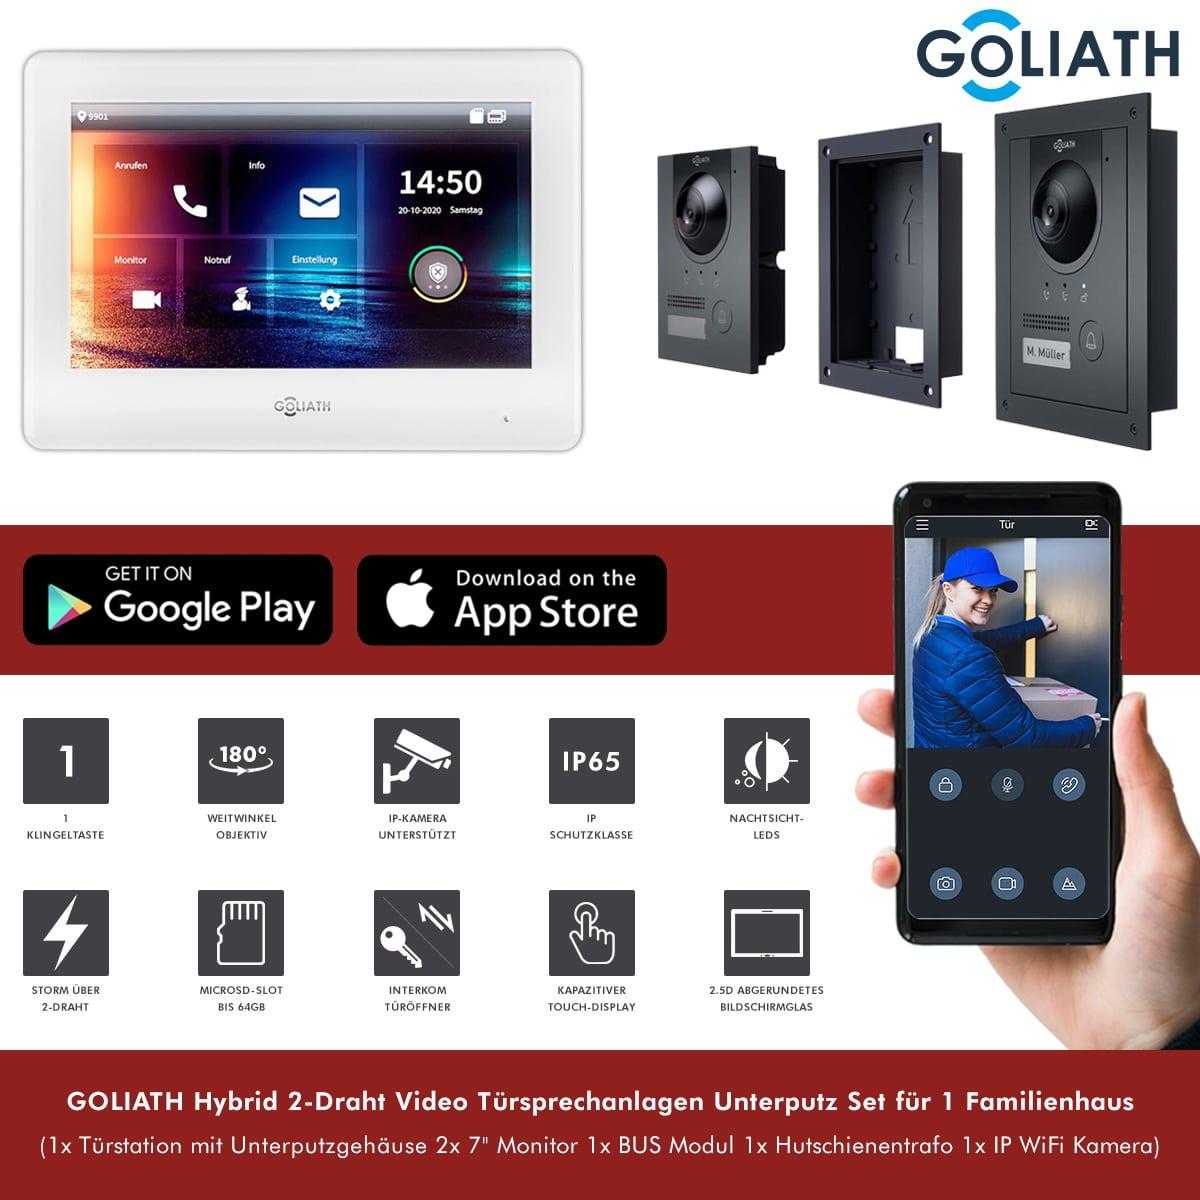 GOLIATH Hybrid 2-Draht Video Türsprechanlage Unterputz Set für 1 Familienhaus 2x 7 Monitor Weiß Anthrazit mit WiFi-Kamera von Goliath-Intercom